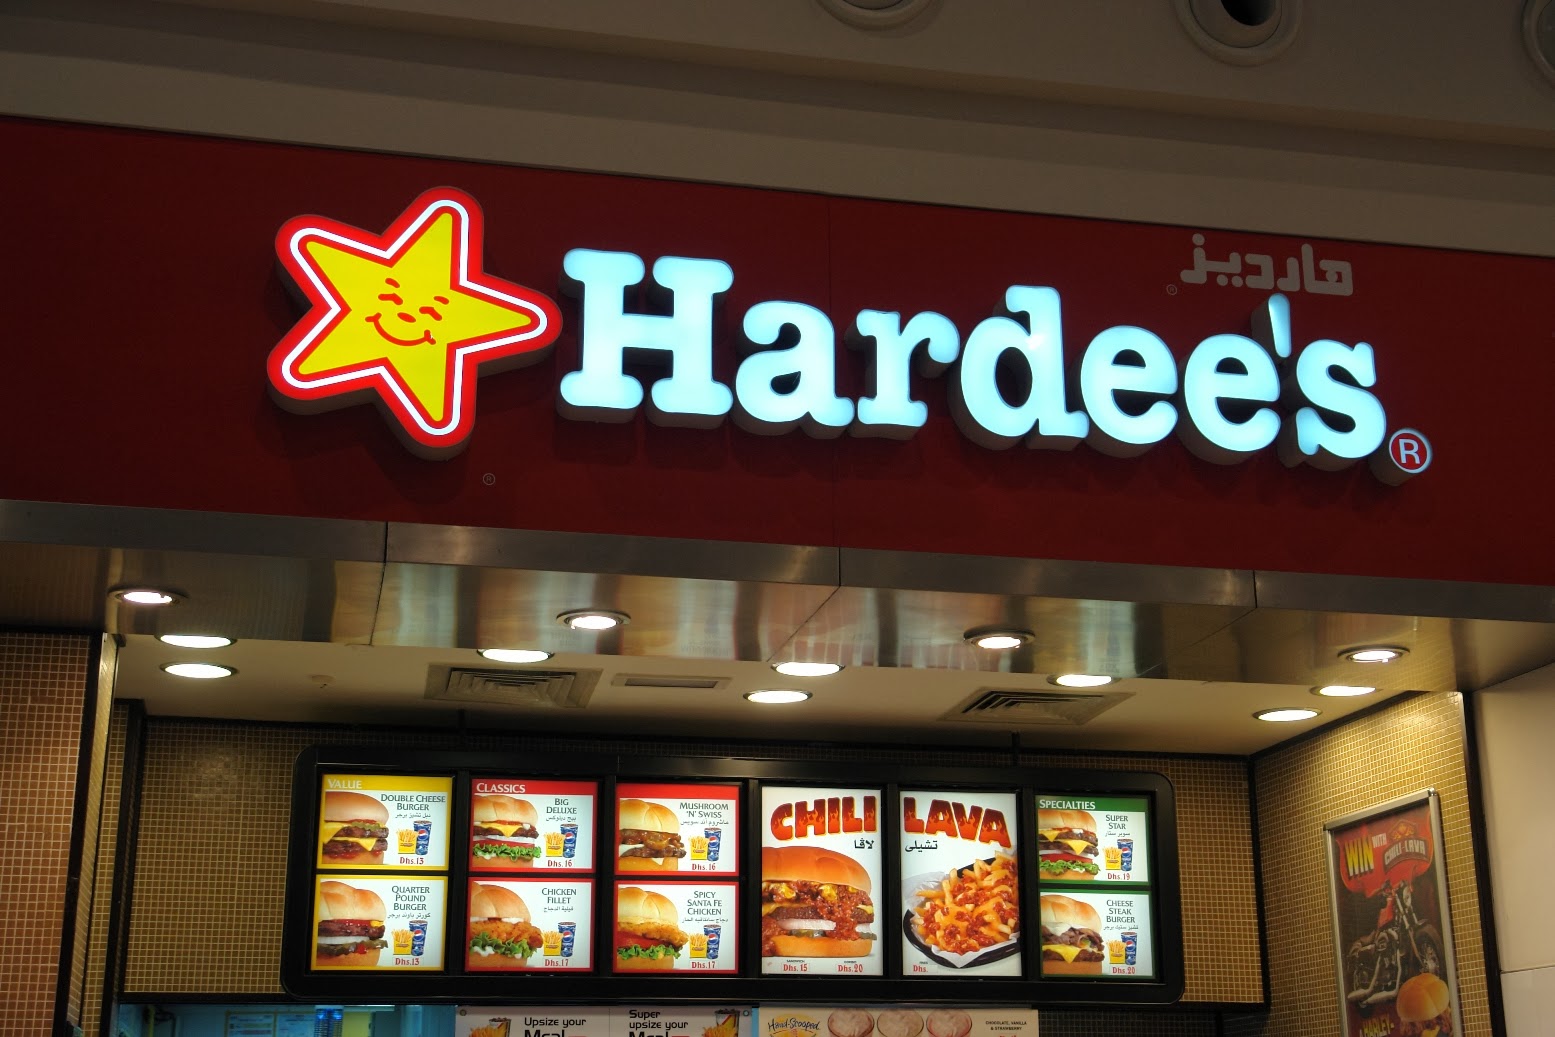 اسعار وجبات هارديز السعودية